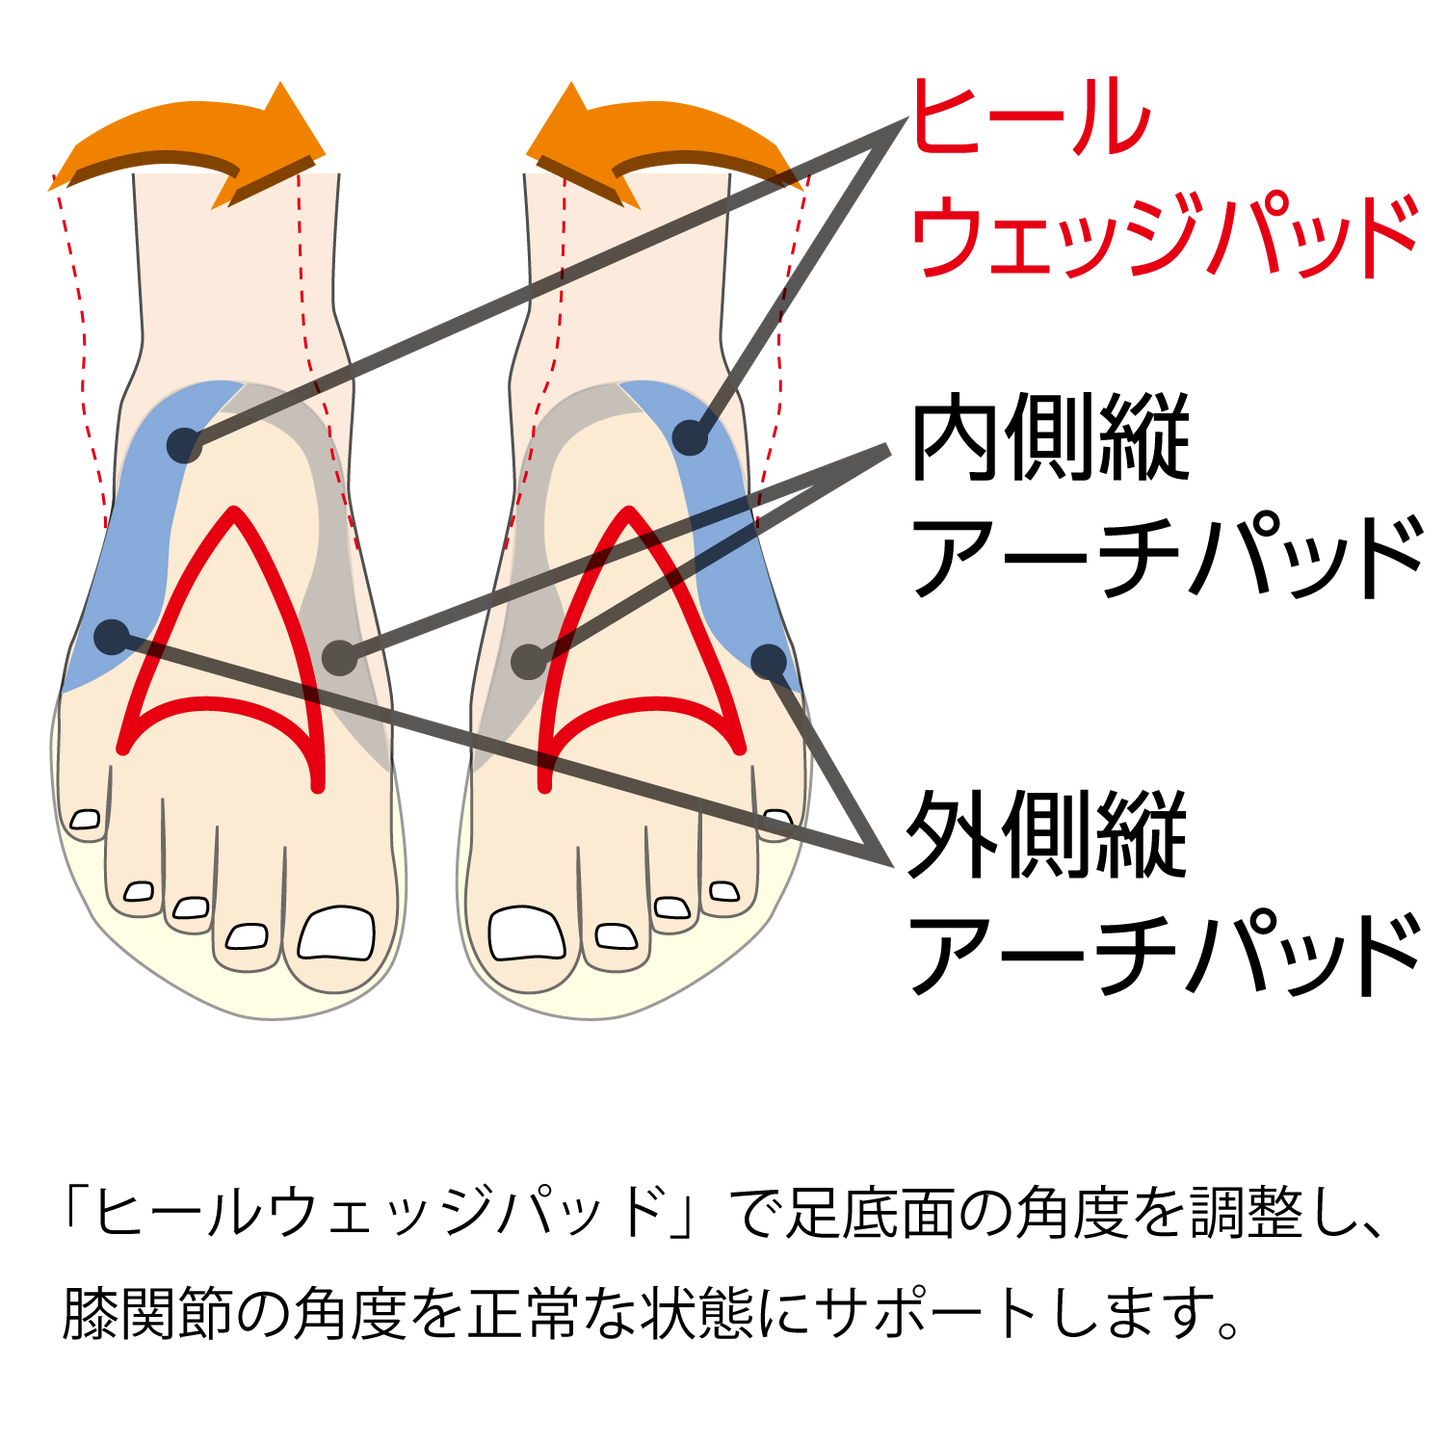 インソールプロO脚対策は「ヒールウェッジパッド」で足底面の角度を調整し、膝関節の角度を正常な状態にサポートします